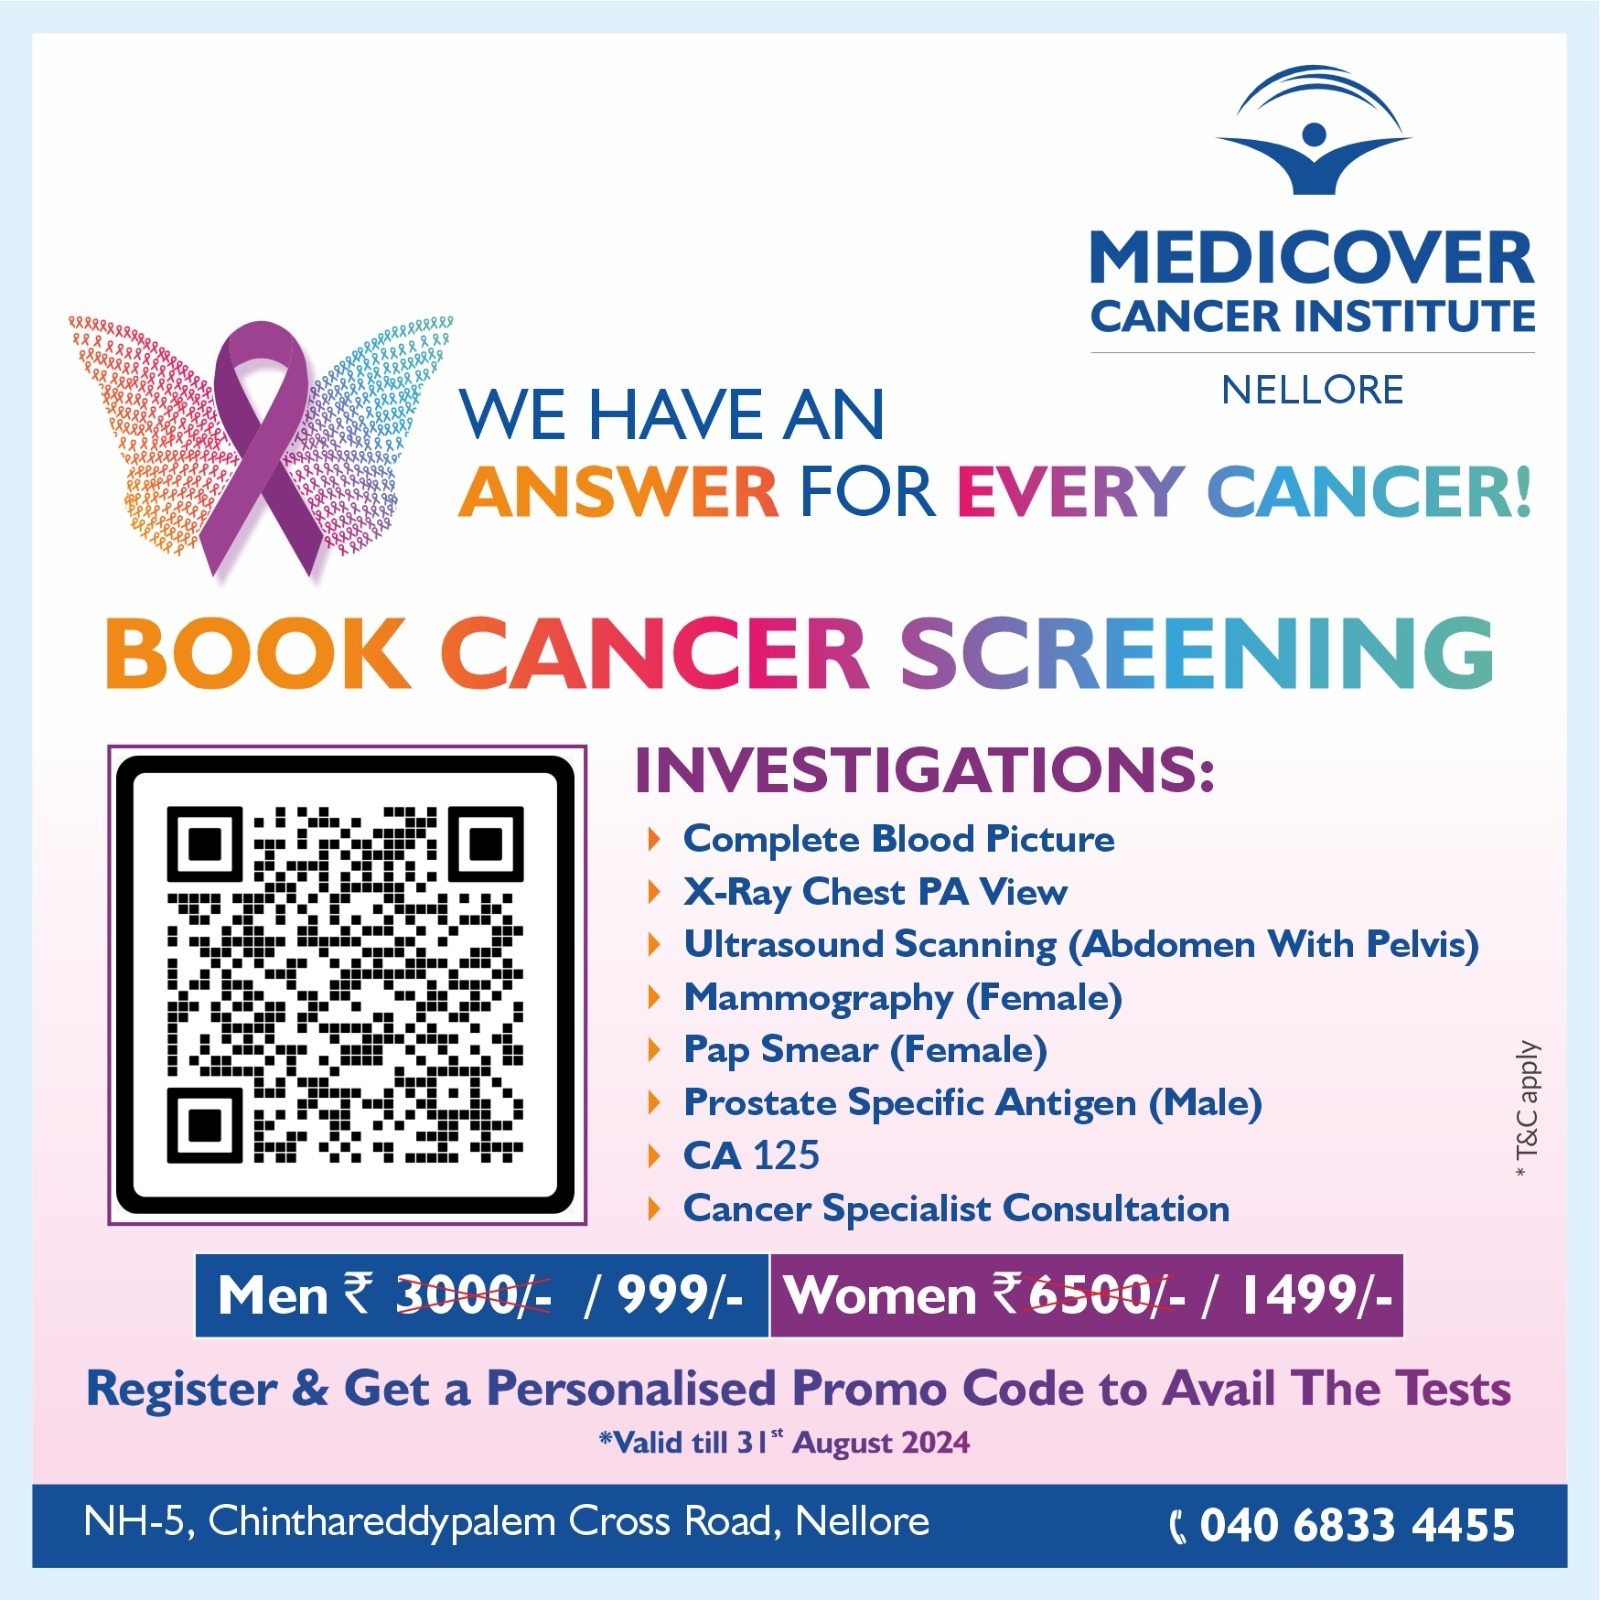 Book Cancer Screening - Nellore